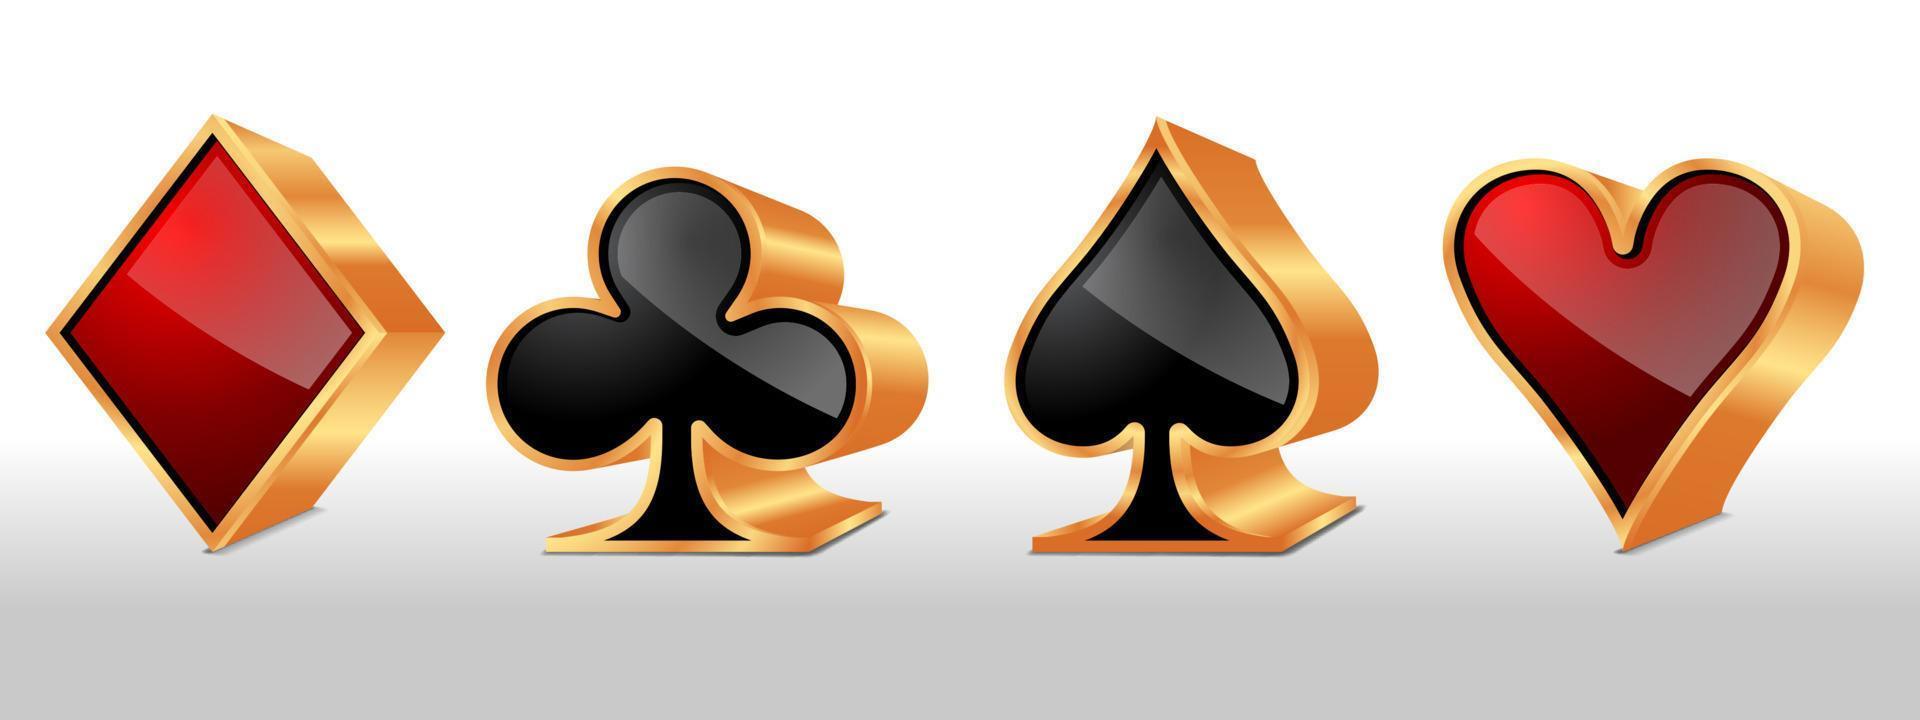 póker tarjeta trajes. conjunto de cuatro ases jugando tarjetas trajes. vector ilustración.